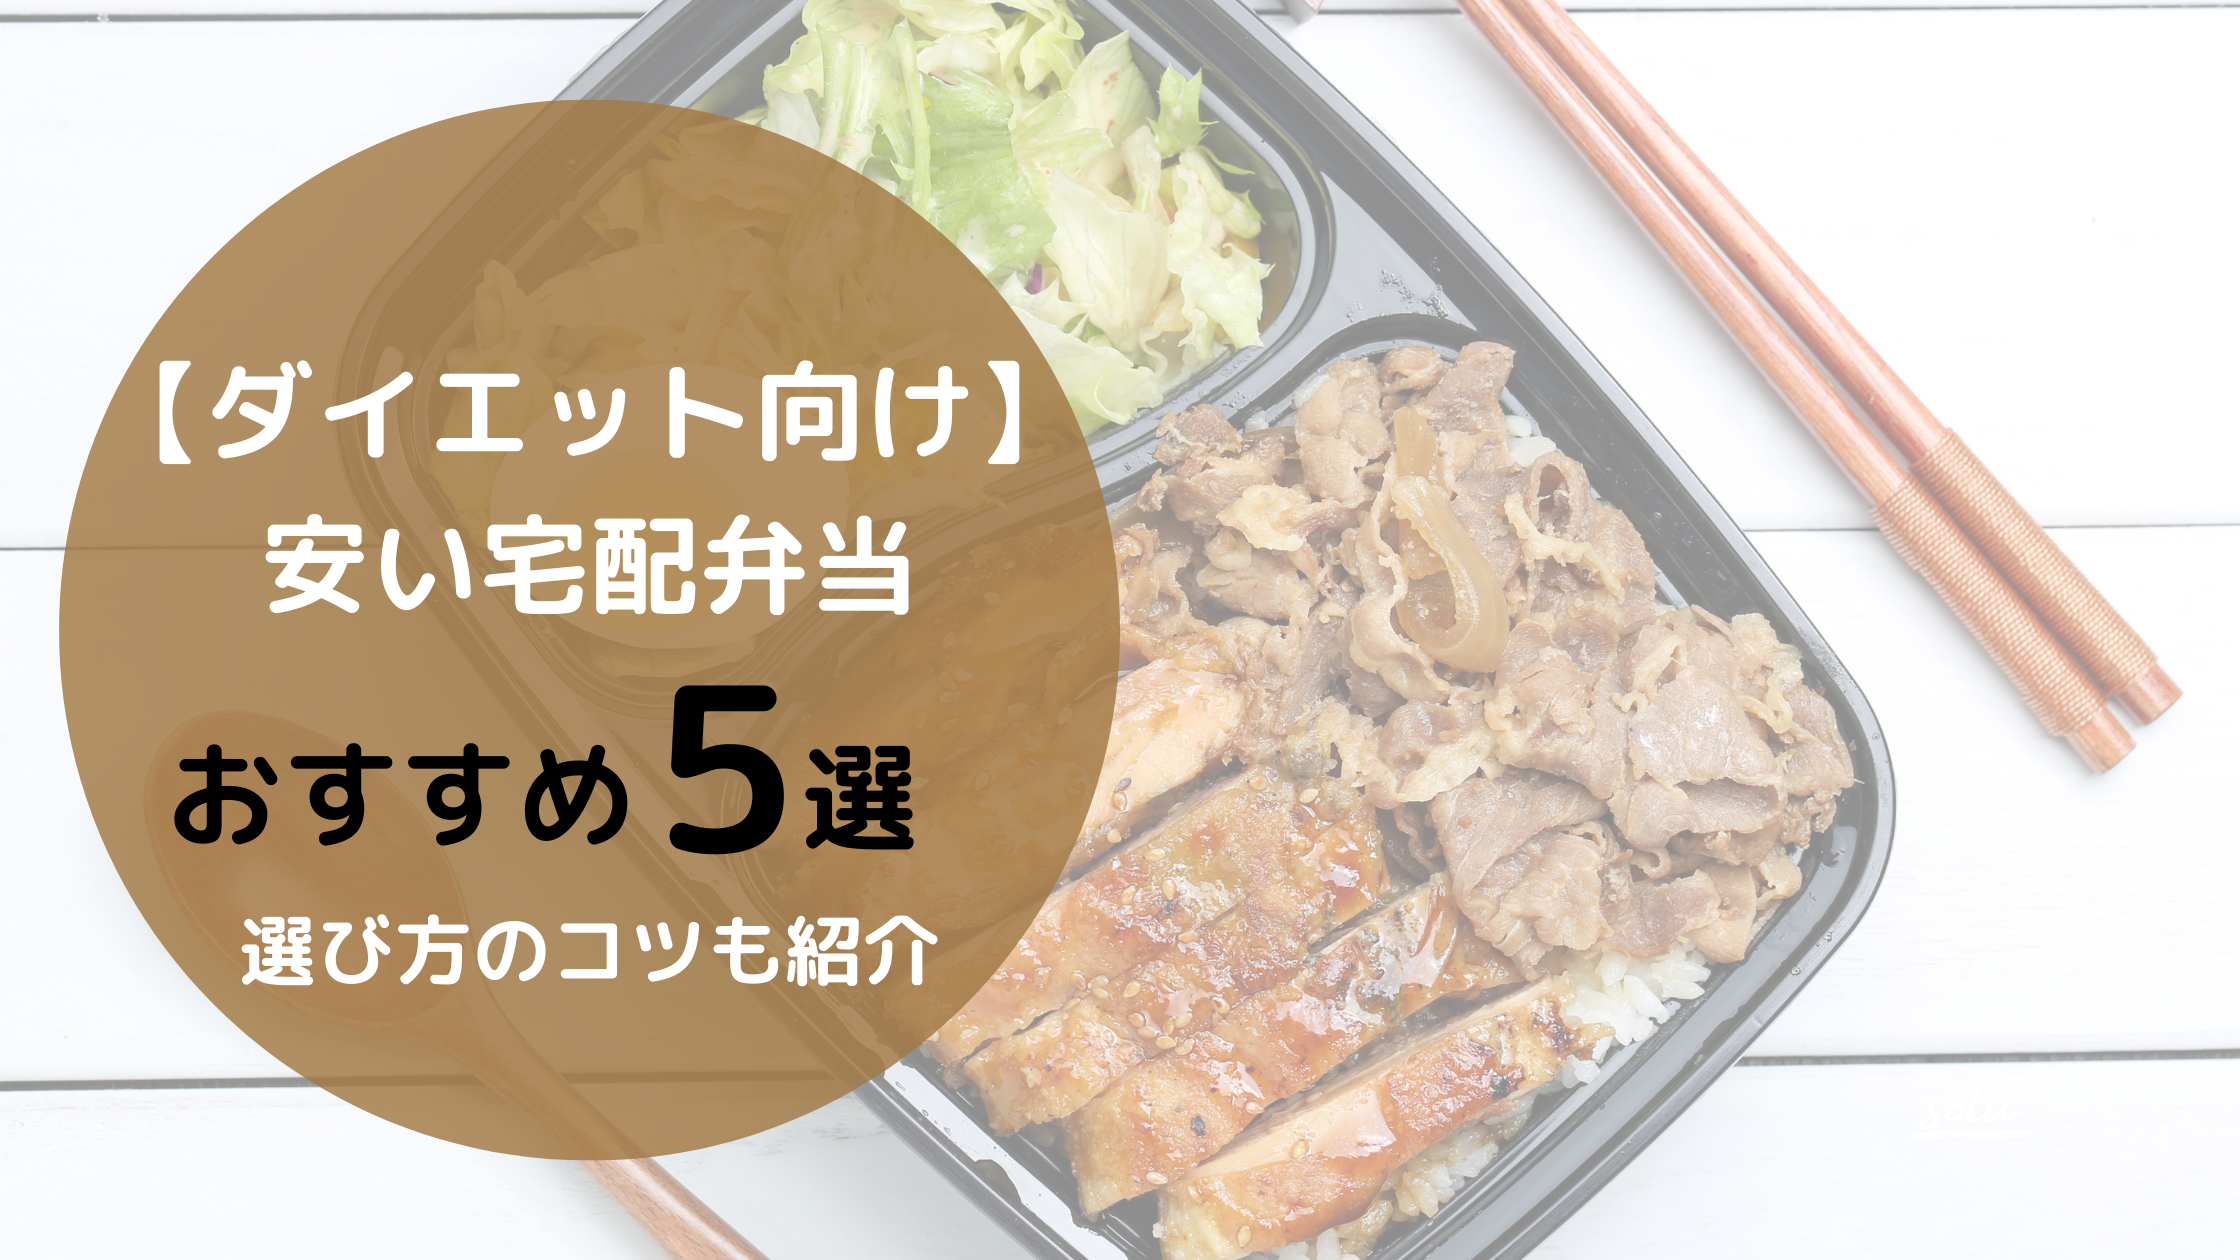 【ダイエット向け】安い宅配弁当おすすめ5選